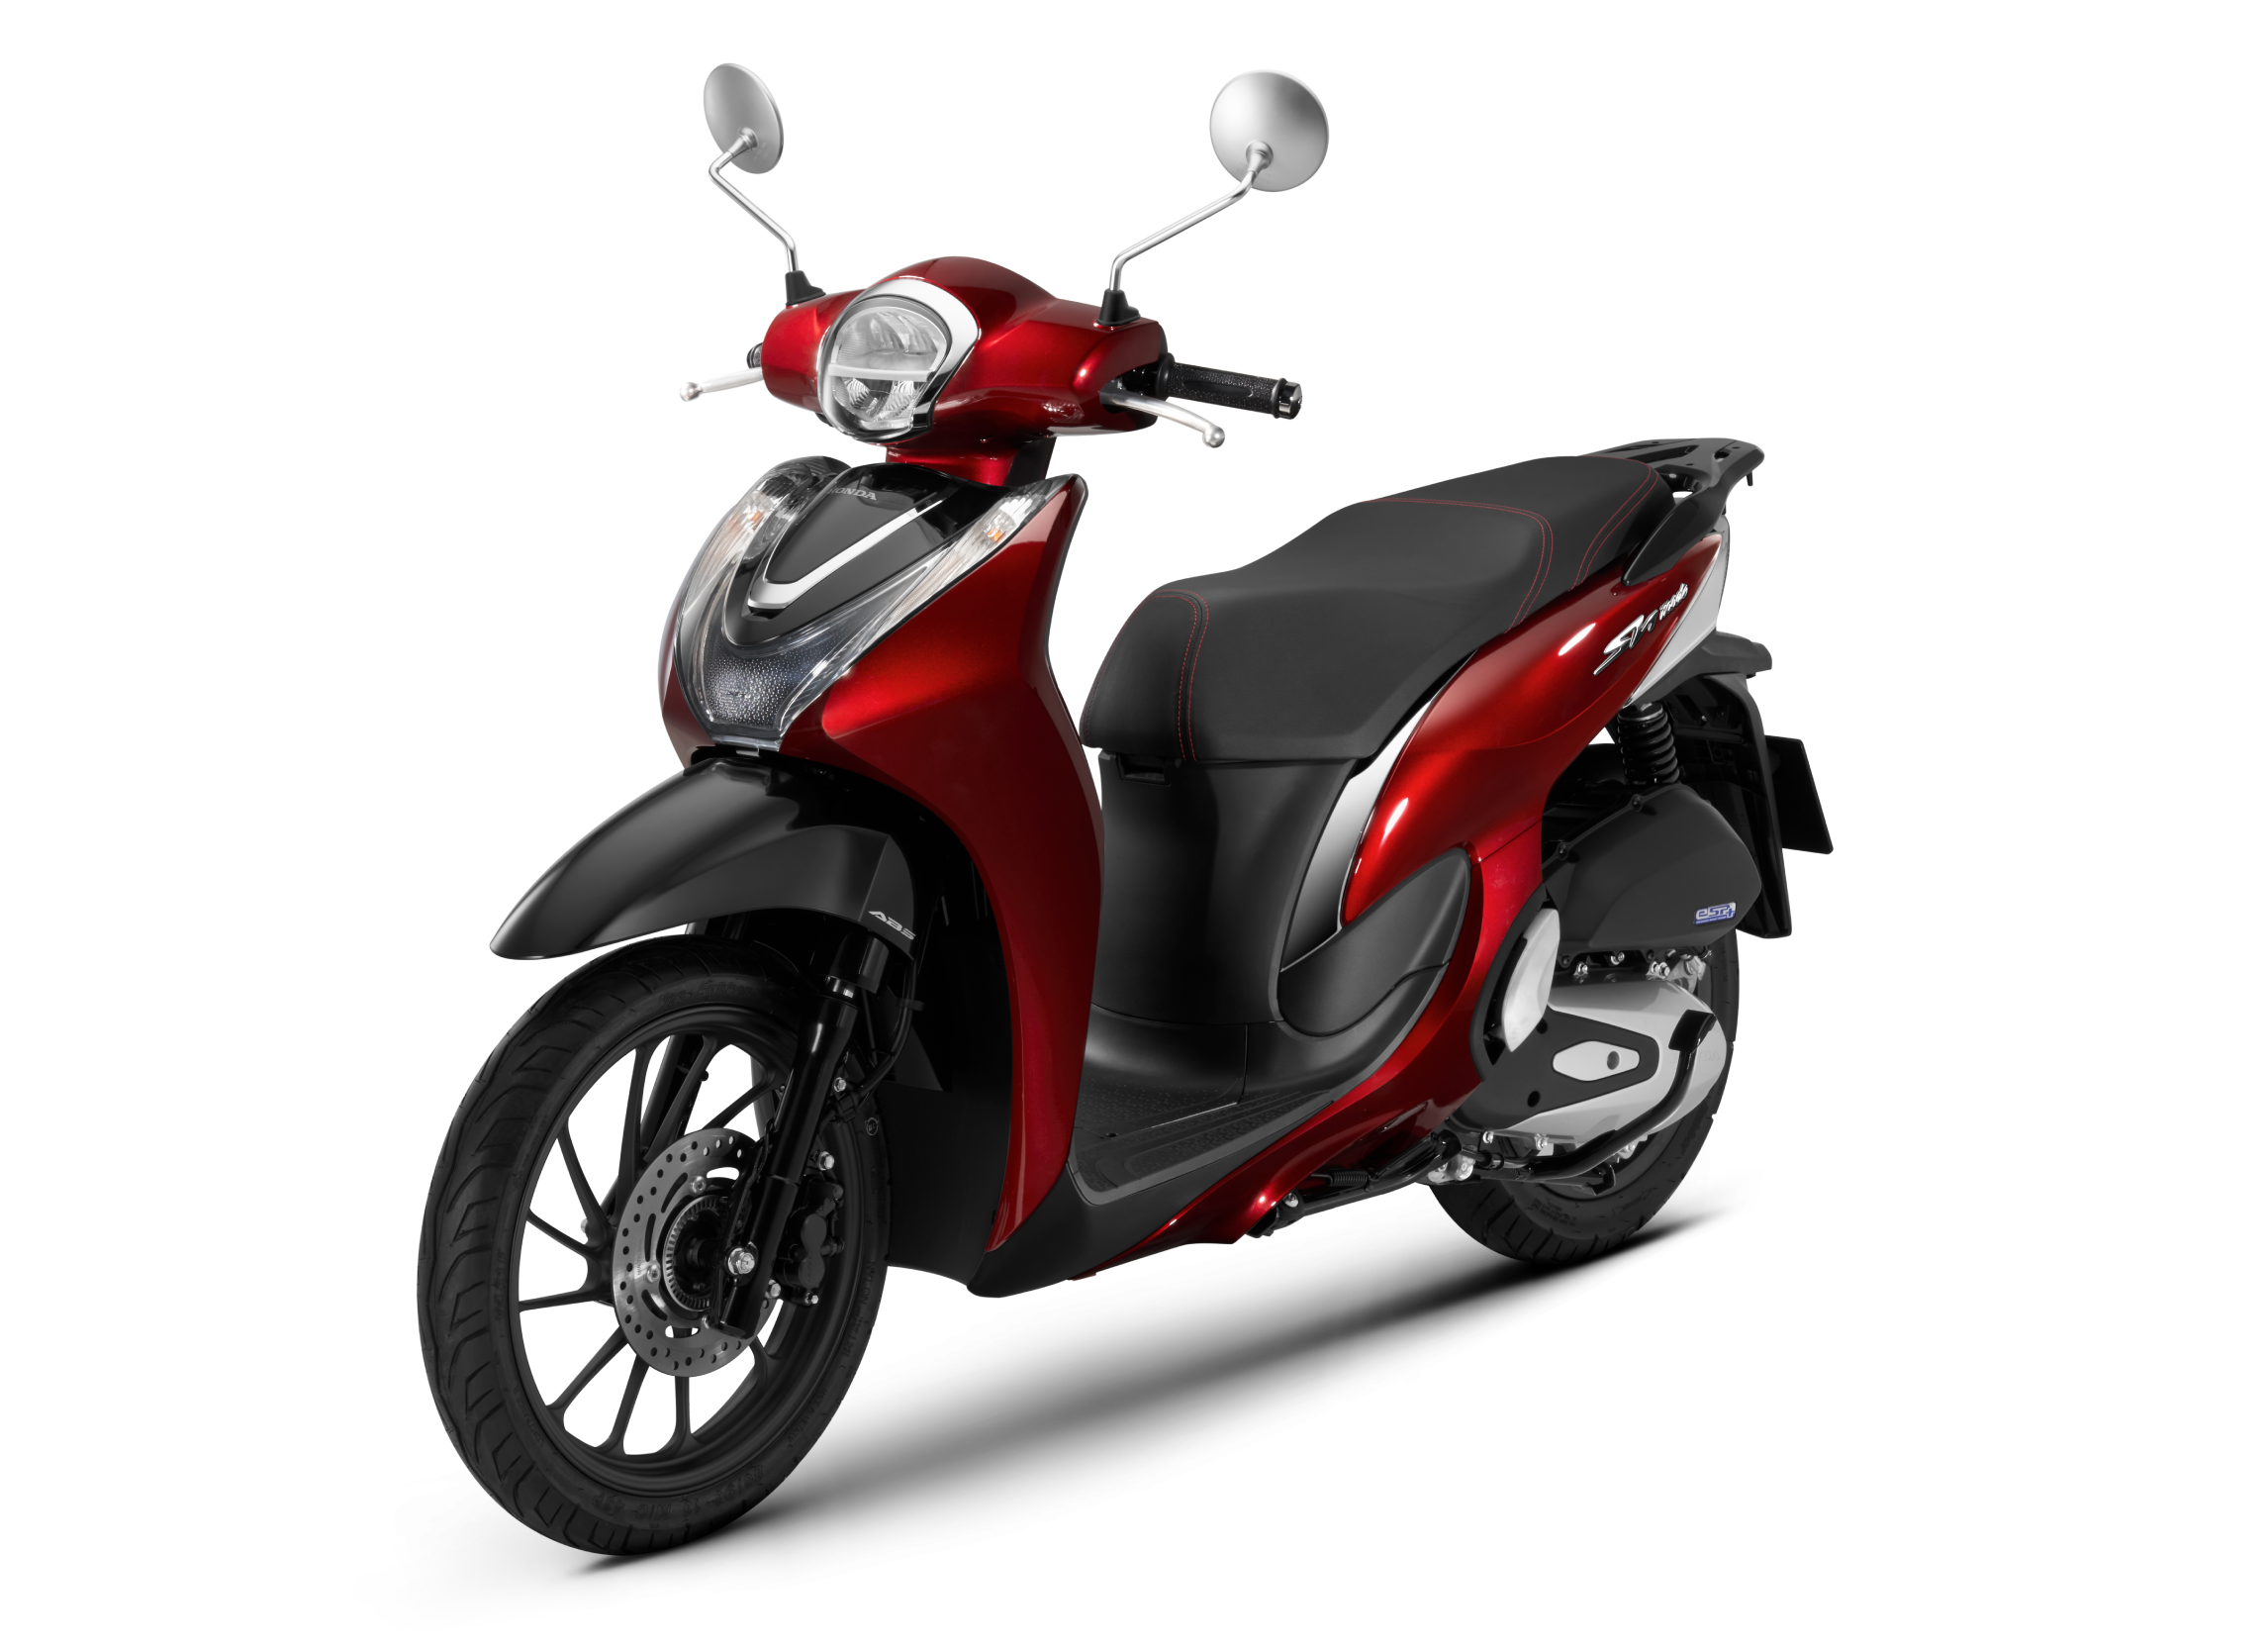 SH mode 125cc: Với động cơ 125cc, Honda SH mode 125cc là lựa chọn tuyệt vời cho những người đang tìm kiếm một chiếc xe tay ga nhỏ gọn và tiết kiệm nhiên liệu. Thiết kế thanh lịch cùng các tính năng hiện đại, SH mode 125cc sẽ giúp bạn làm chủ mọi cung đường đô thị.